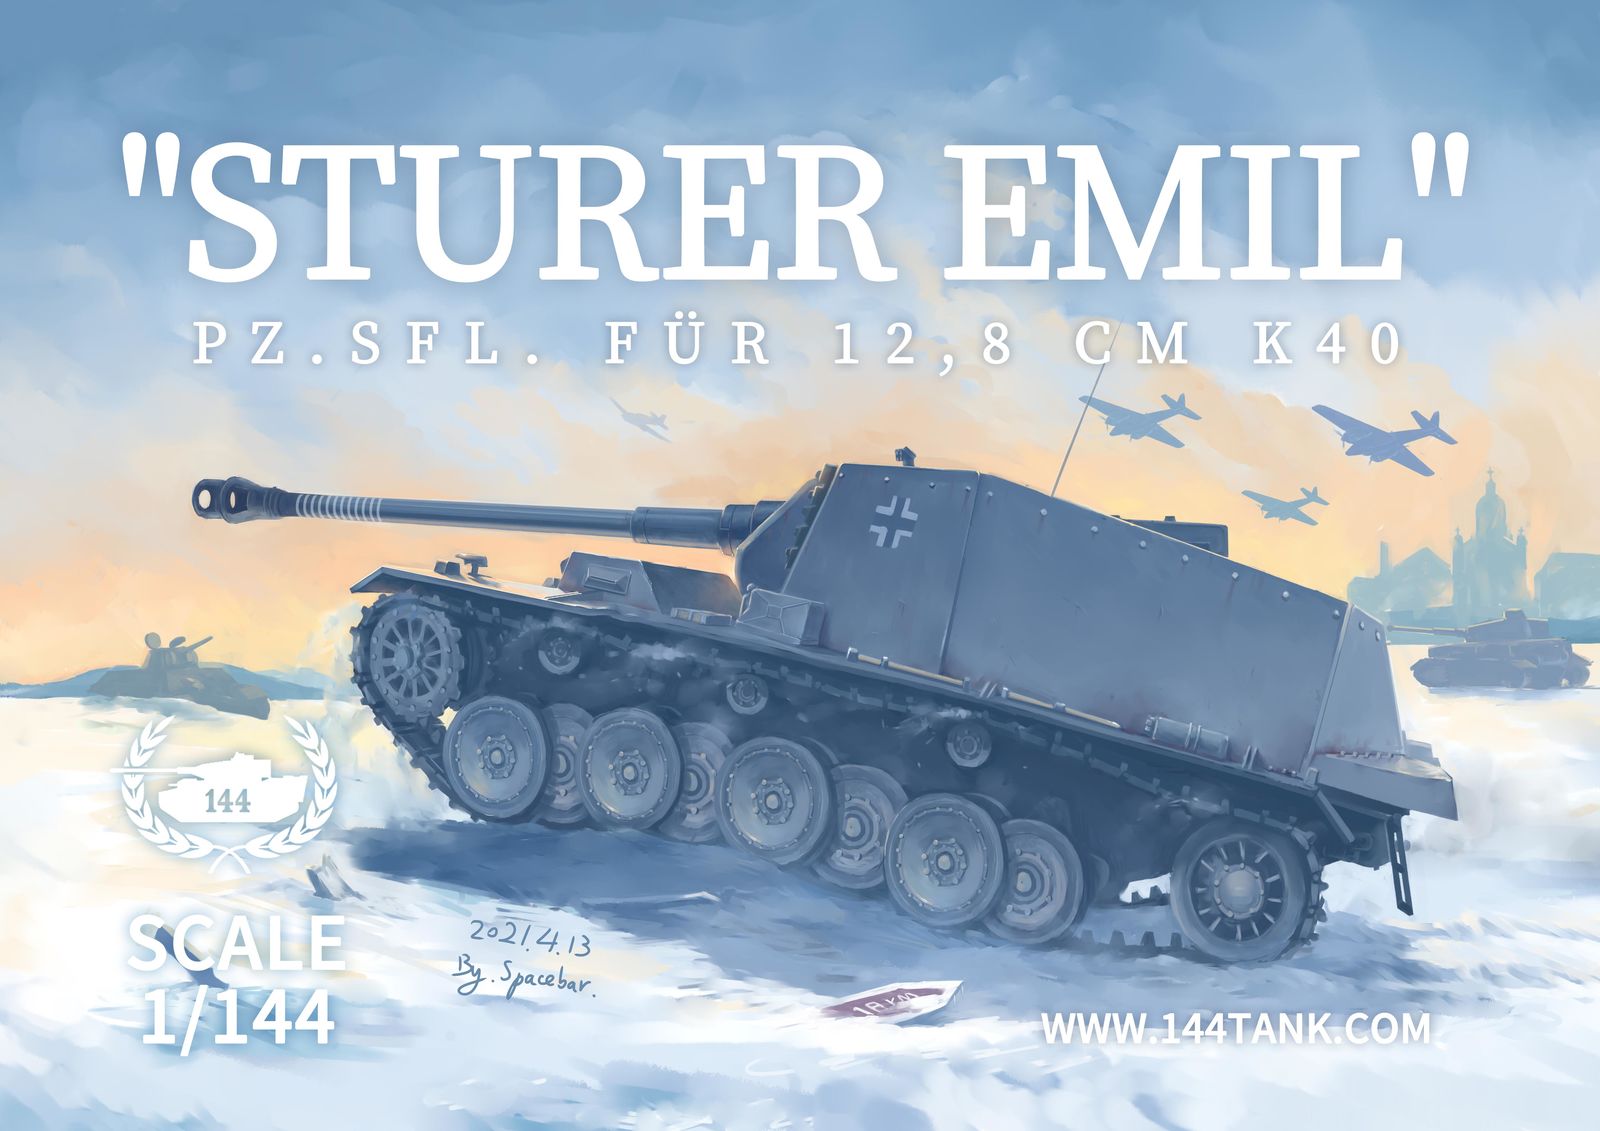 Sturer Emil